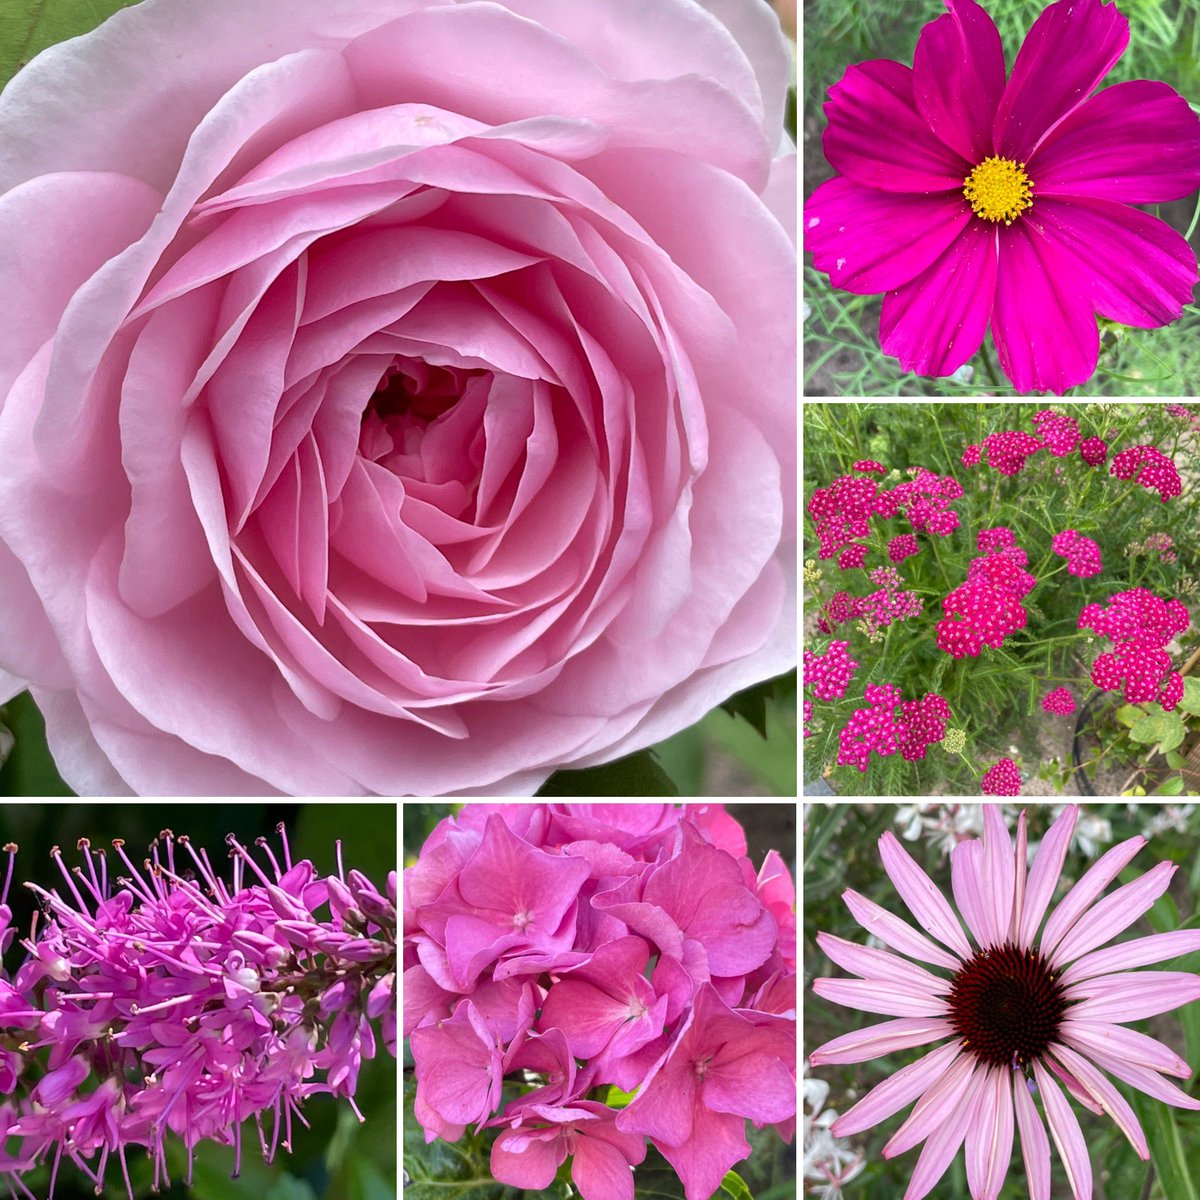 Lovely pinks 💕 for #SixOnSaturday #mygarden